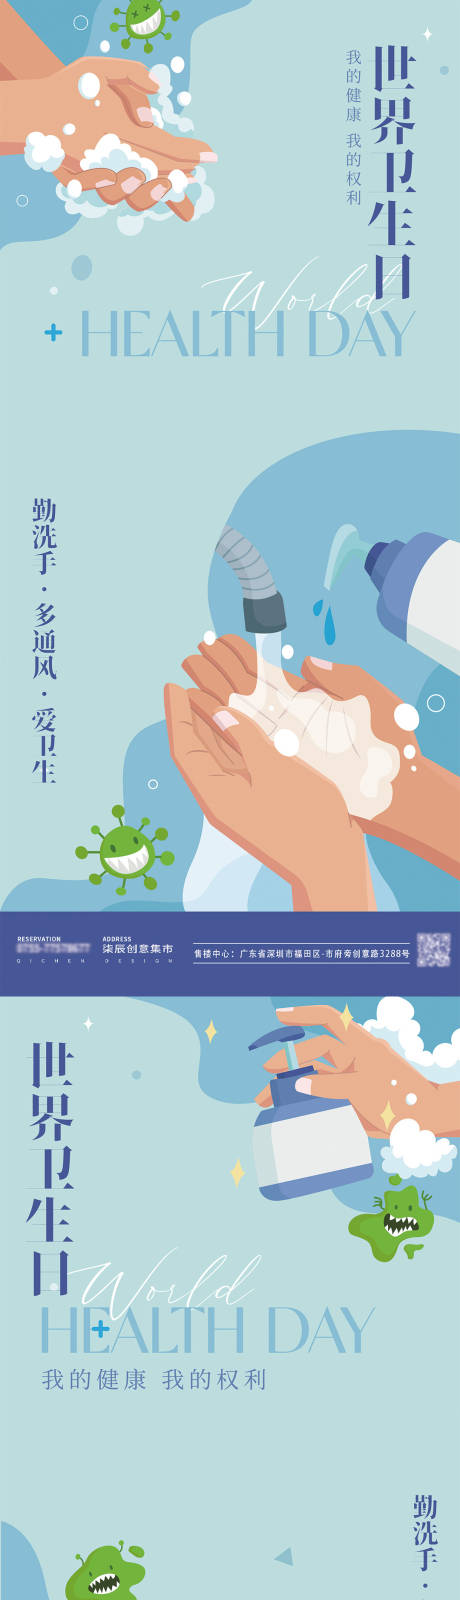 世界卫生日勤洗手矢量海报